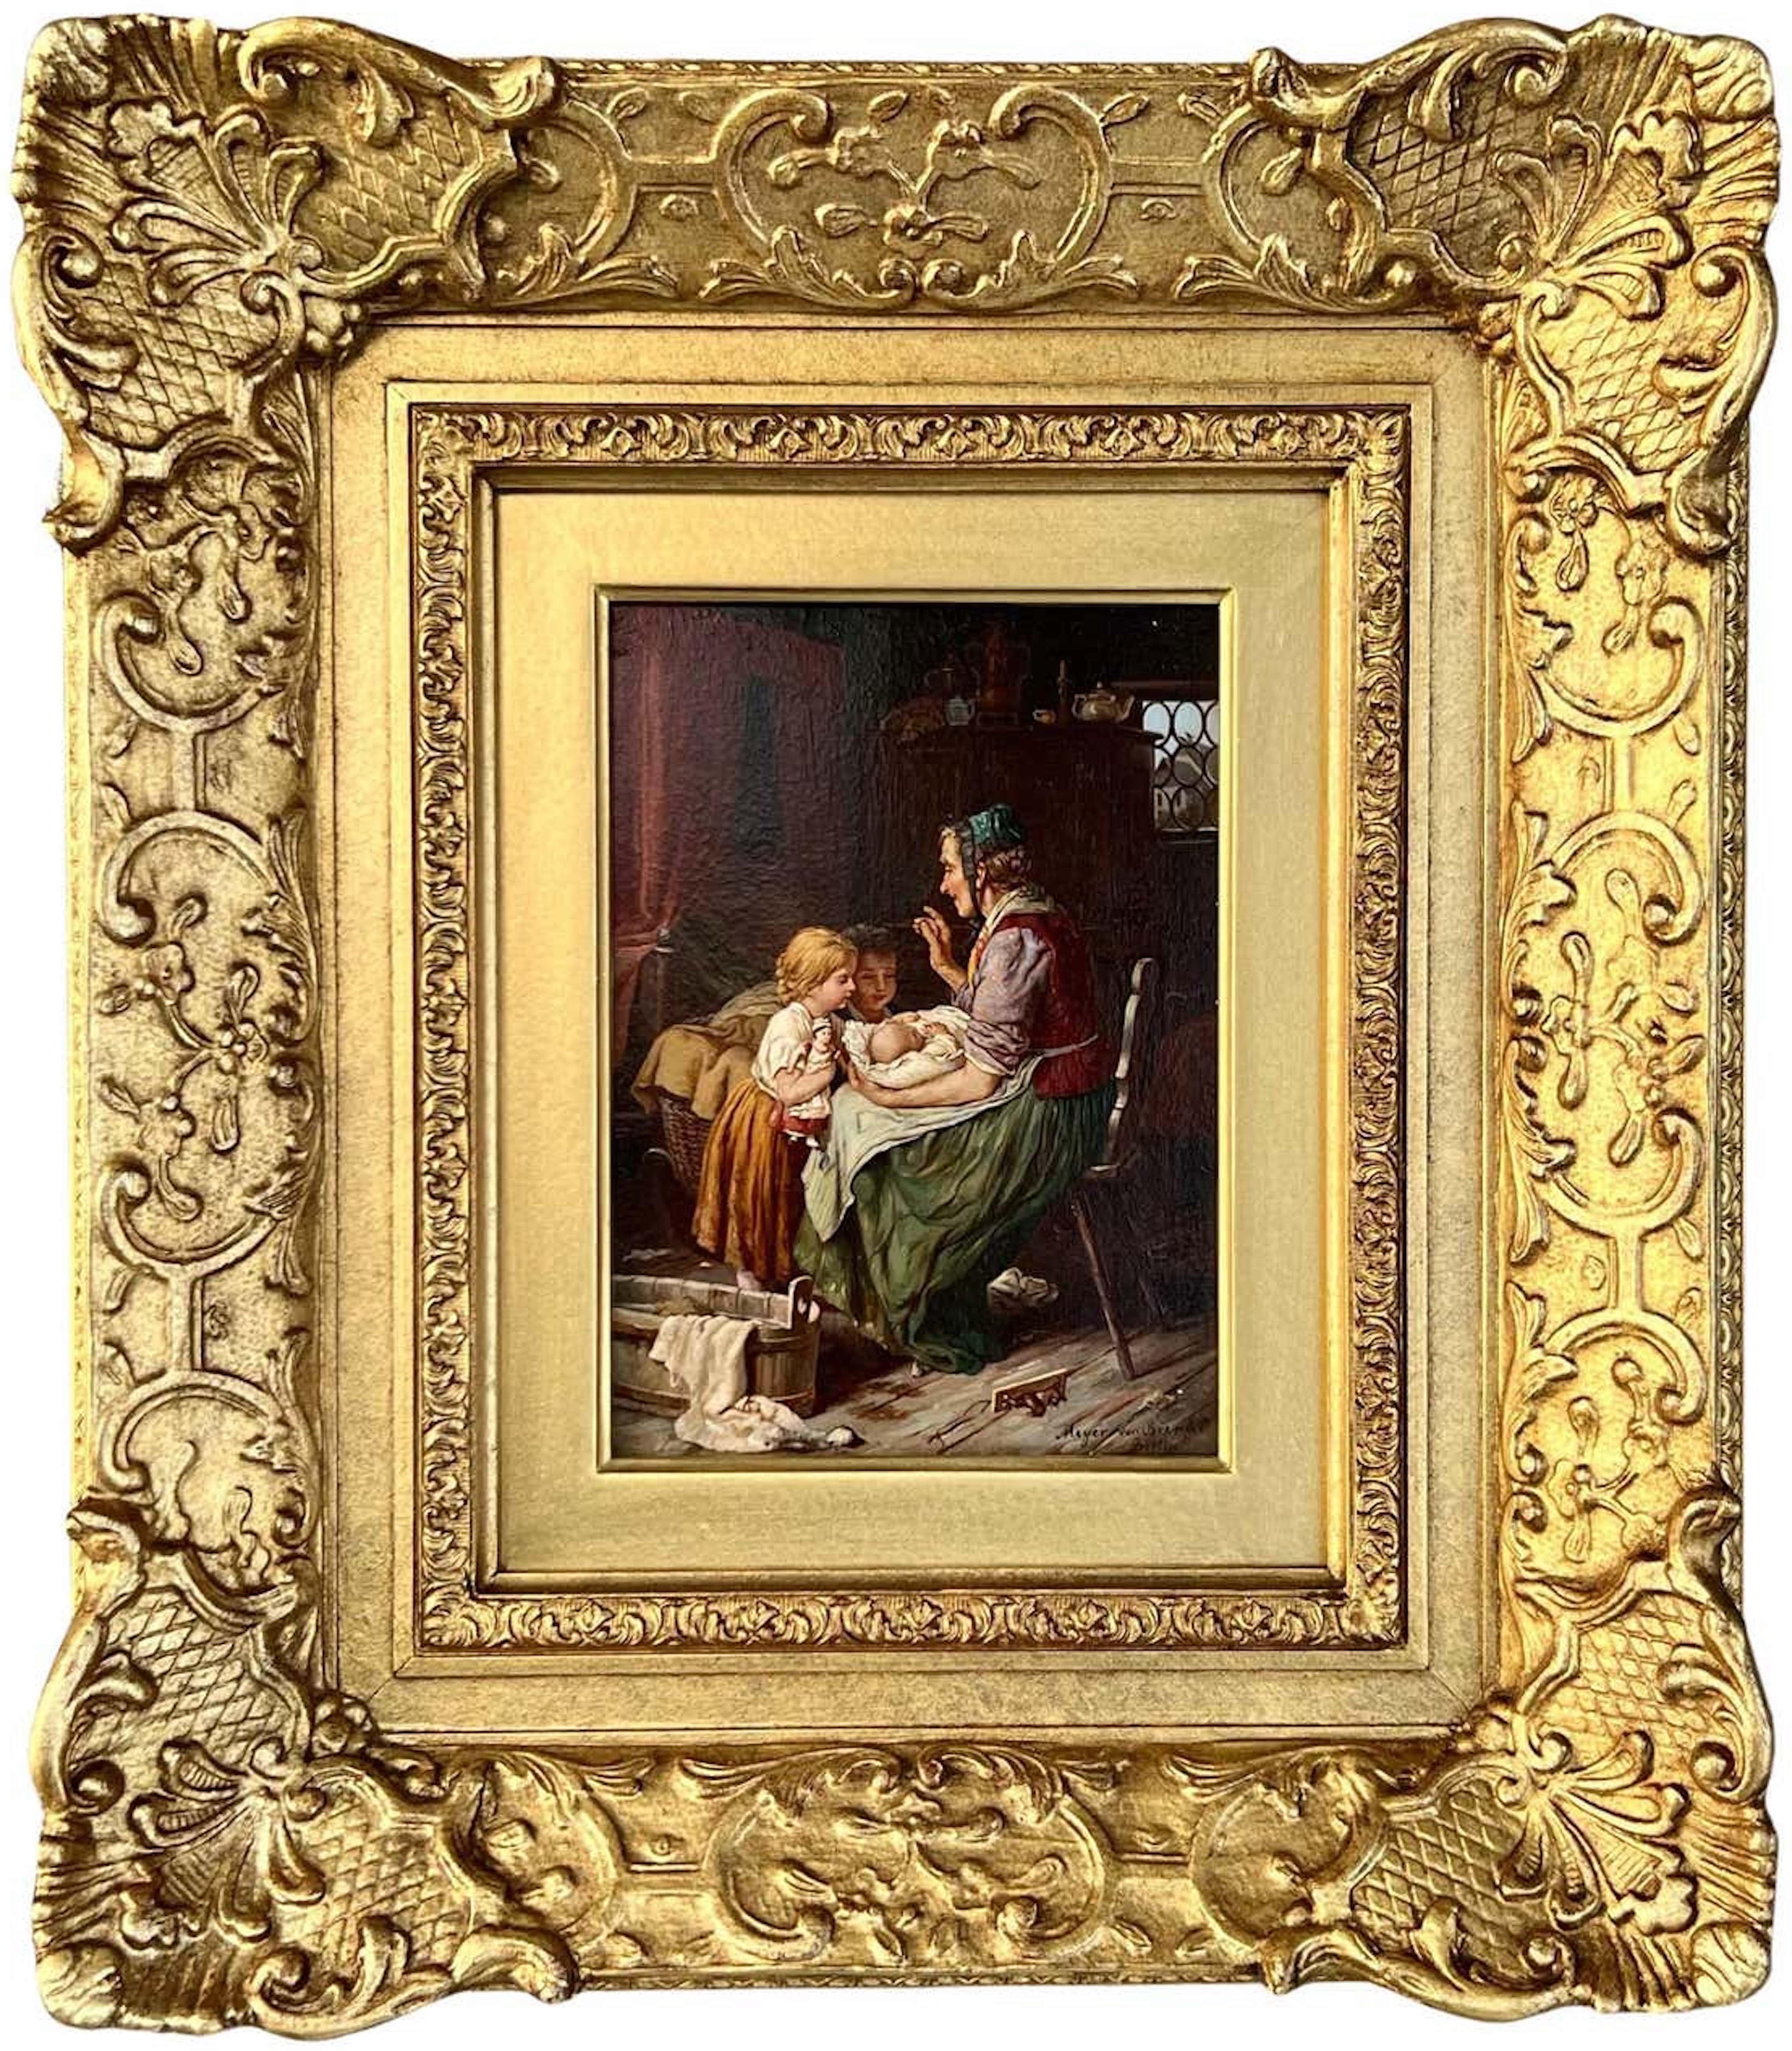 Johann Georg Meyer von Bremen Interior Painting - The New Sibling